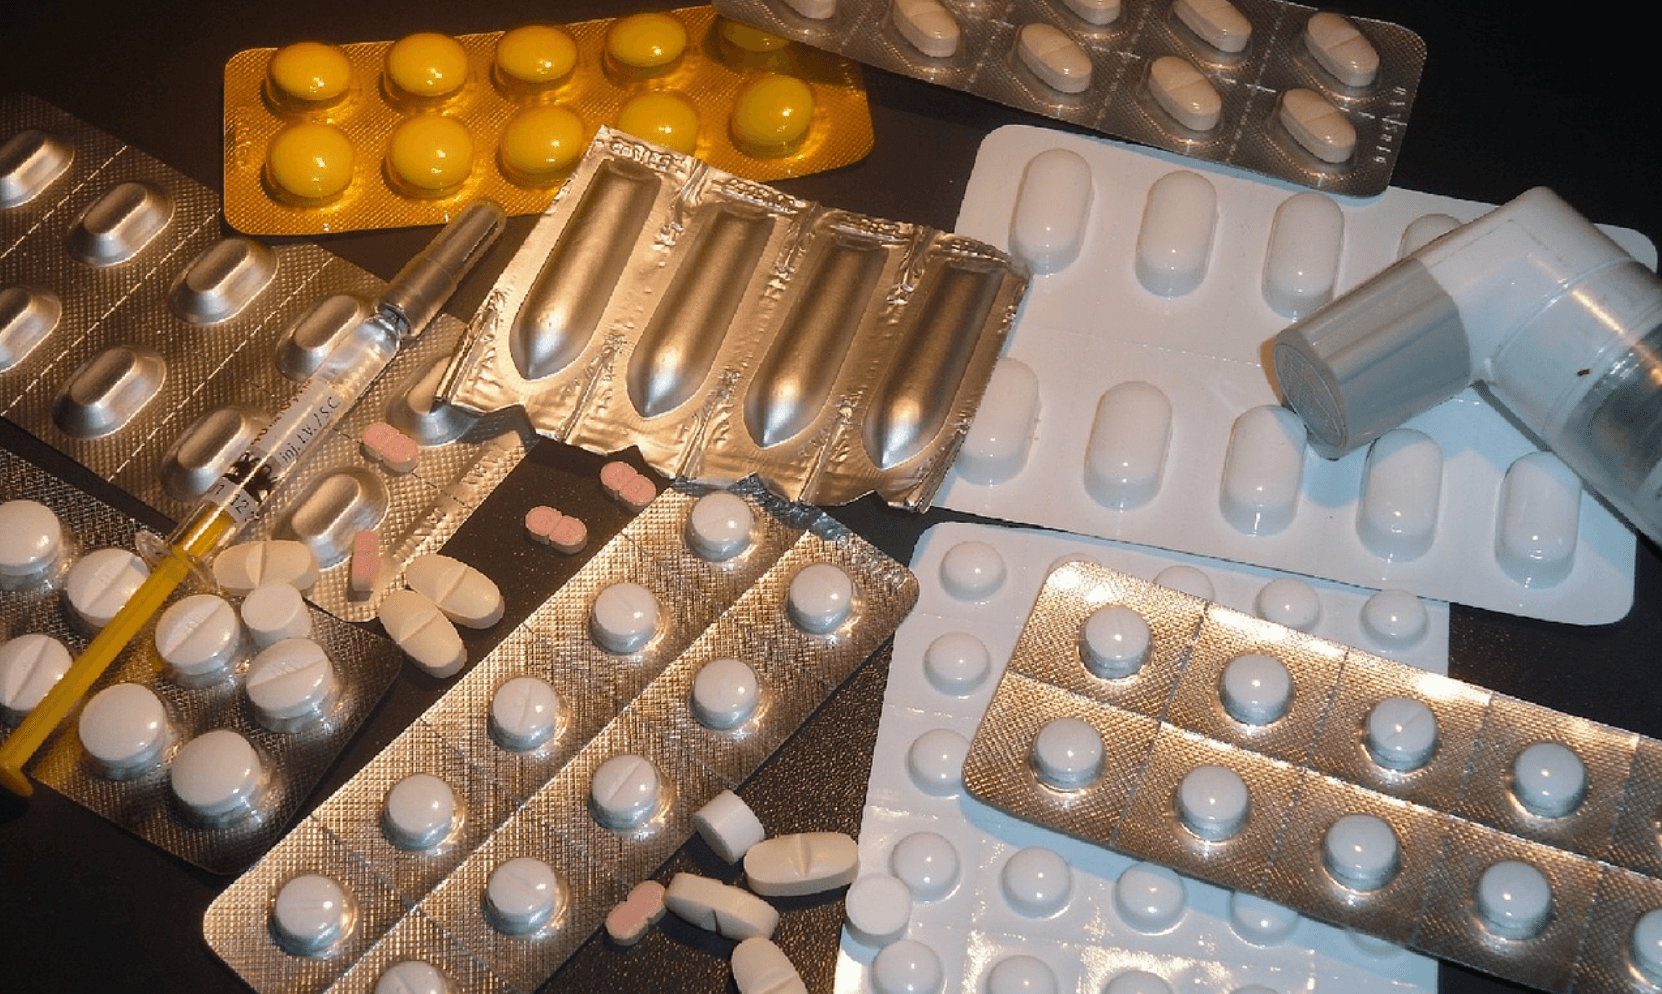 Insabi sólo ha entregado 9.5% de los medicamentos solicitados por estados